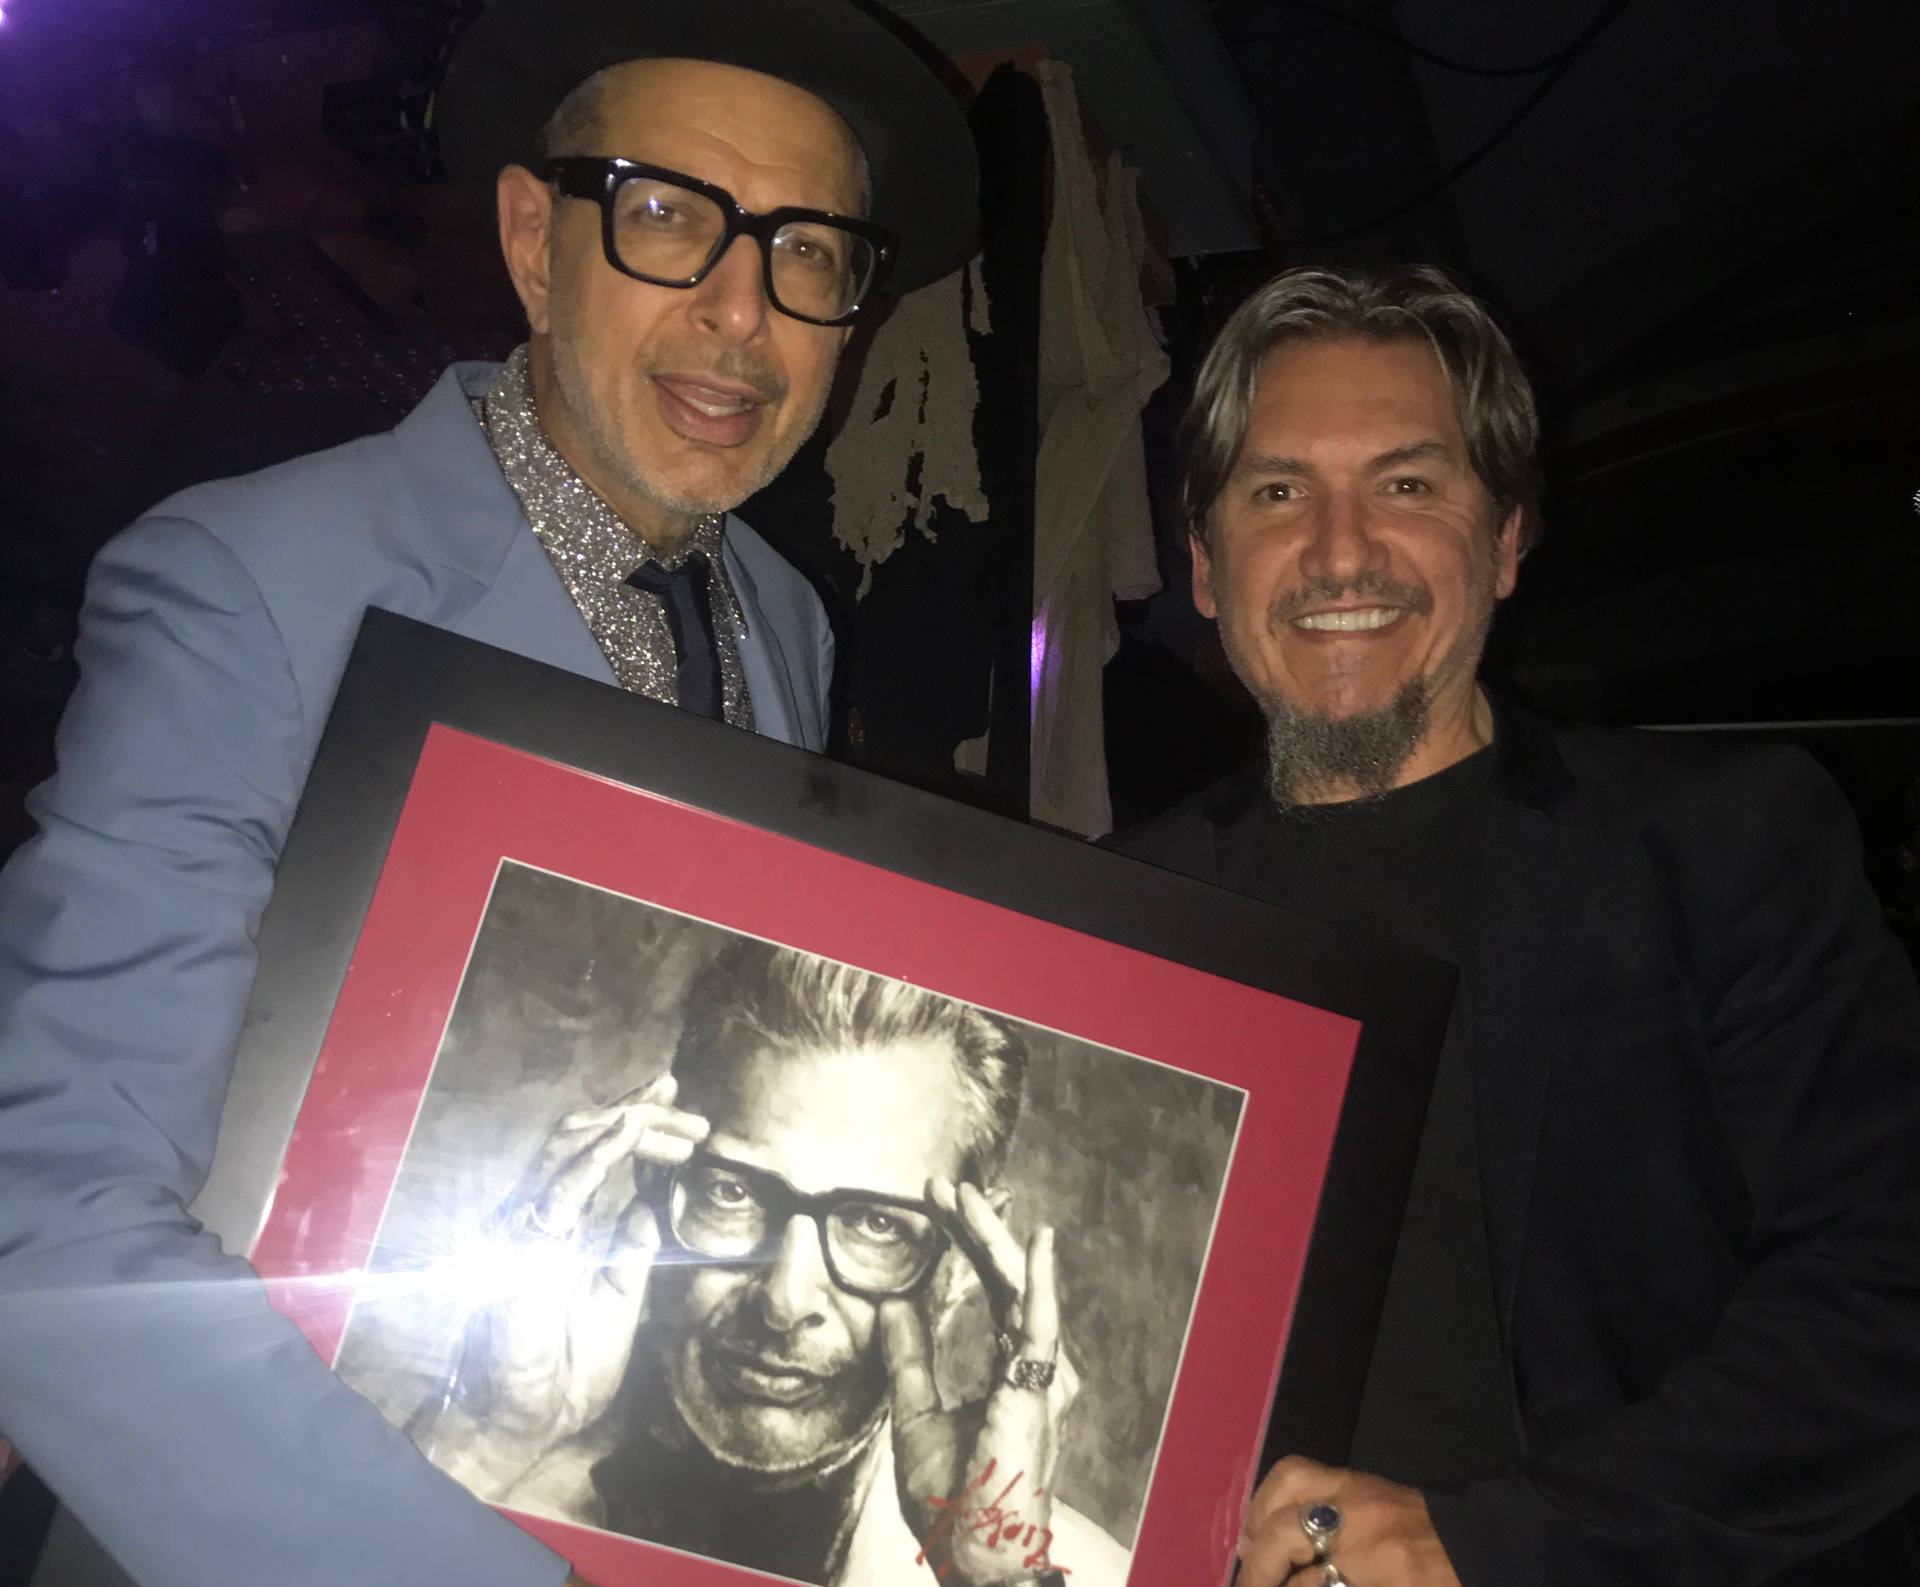 Jeff Goldblum holding portrait next to Fabian Perez